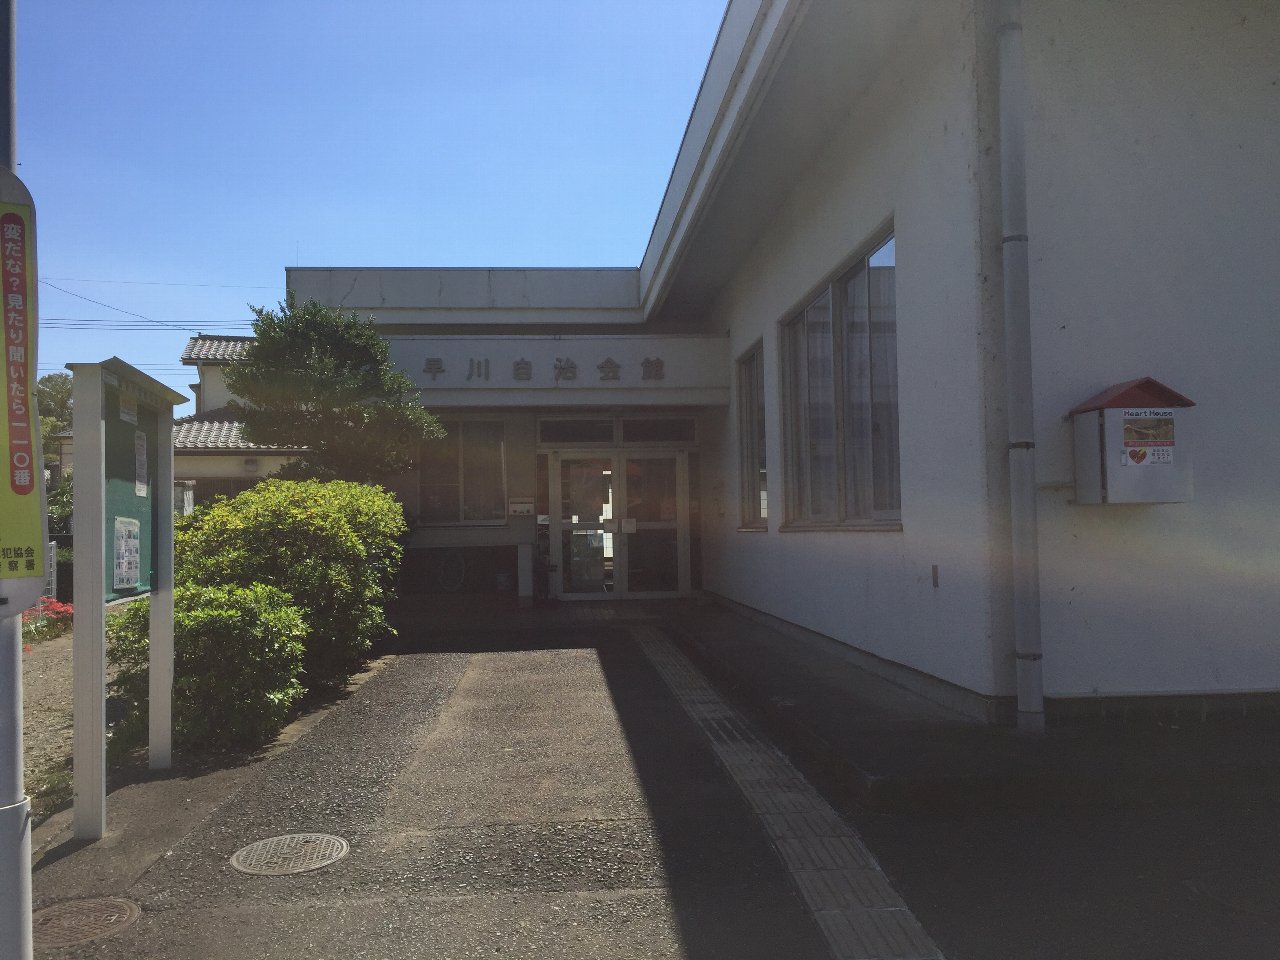 早川自治会館と書かれた入り口を正面から写した写真